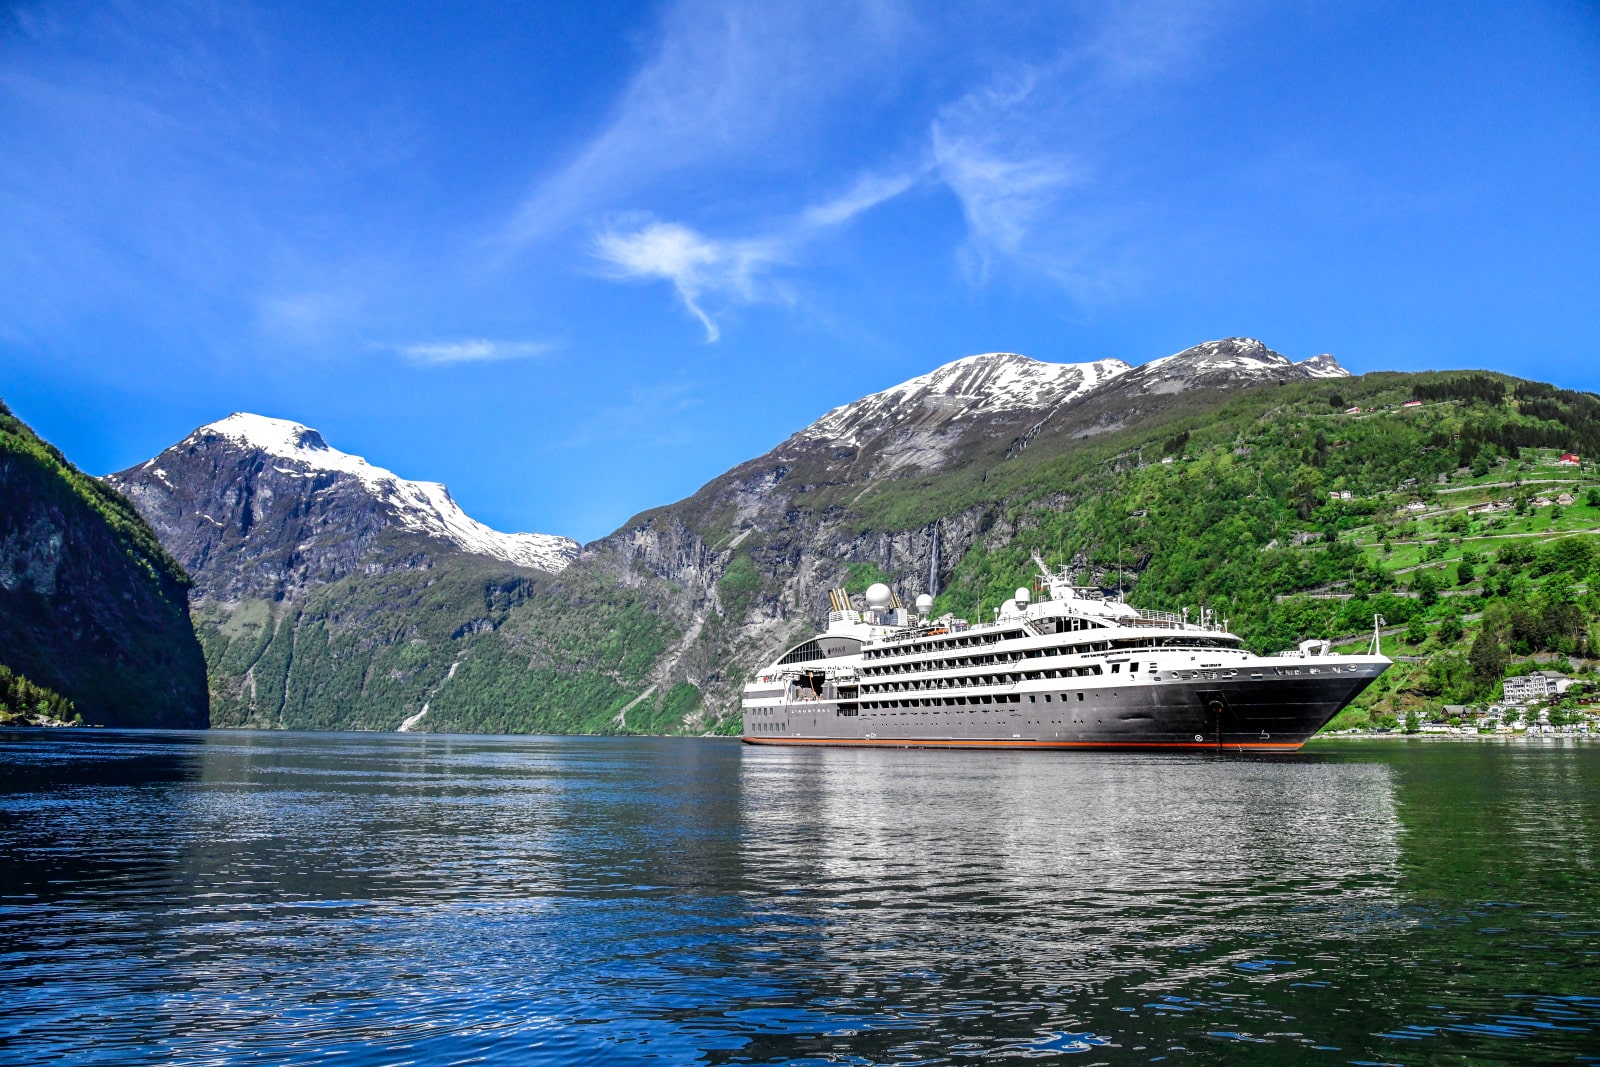 Croisières dans les fjords norvégiens : voici un guide détaillé pour un voyage inoubliable !